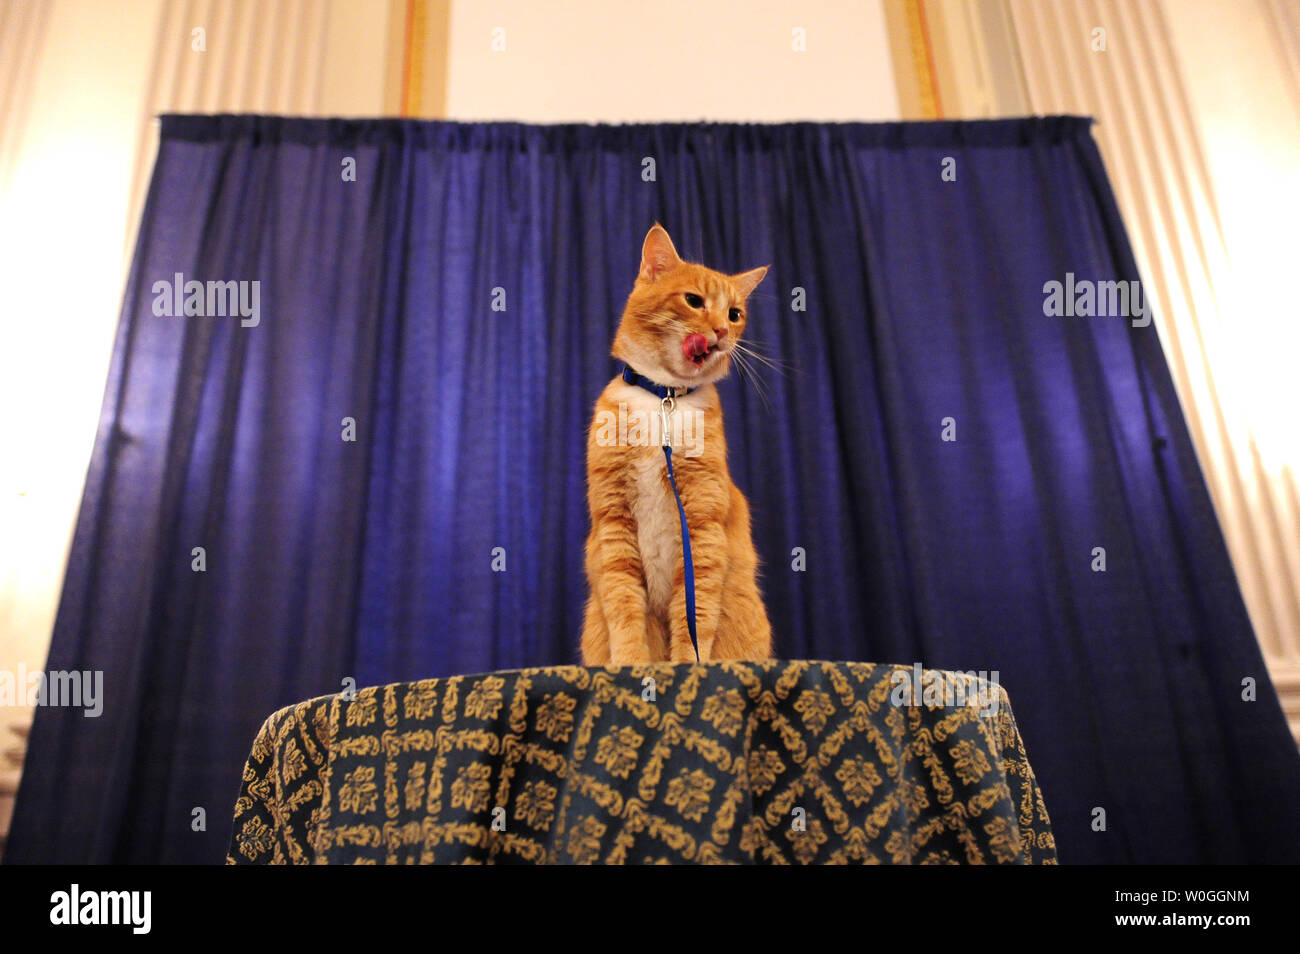 Cheeto, le 3-ans tabby orange qui a joué dans le film Azrael 'Les Schtroumpfs' pose pour des photos lors de la réception sur la célébrité presque Animal de la colline du Capitole à Washington le 22 septembre 2011. UPI/Kevin Dietsch Banque D'Images